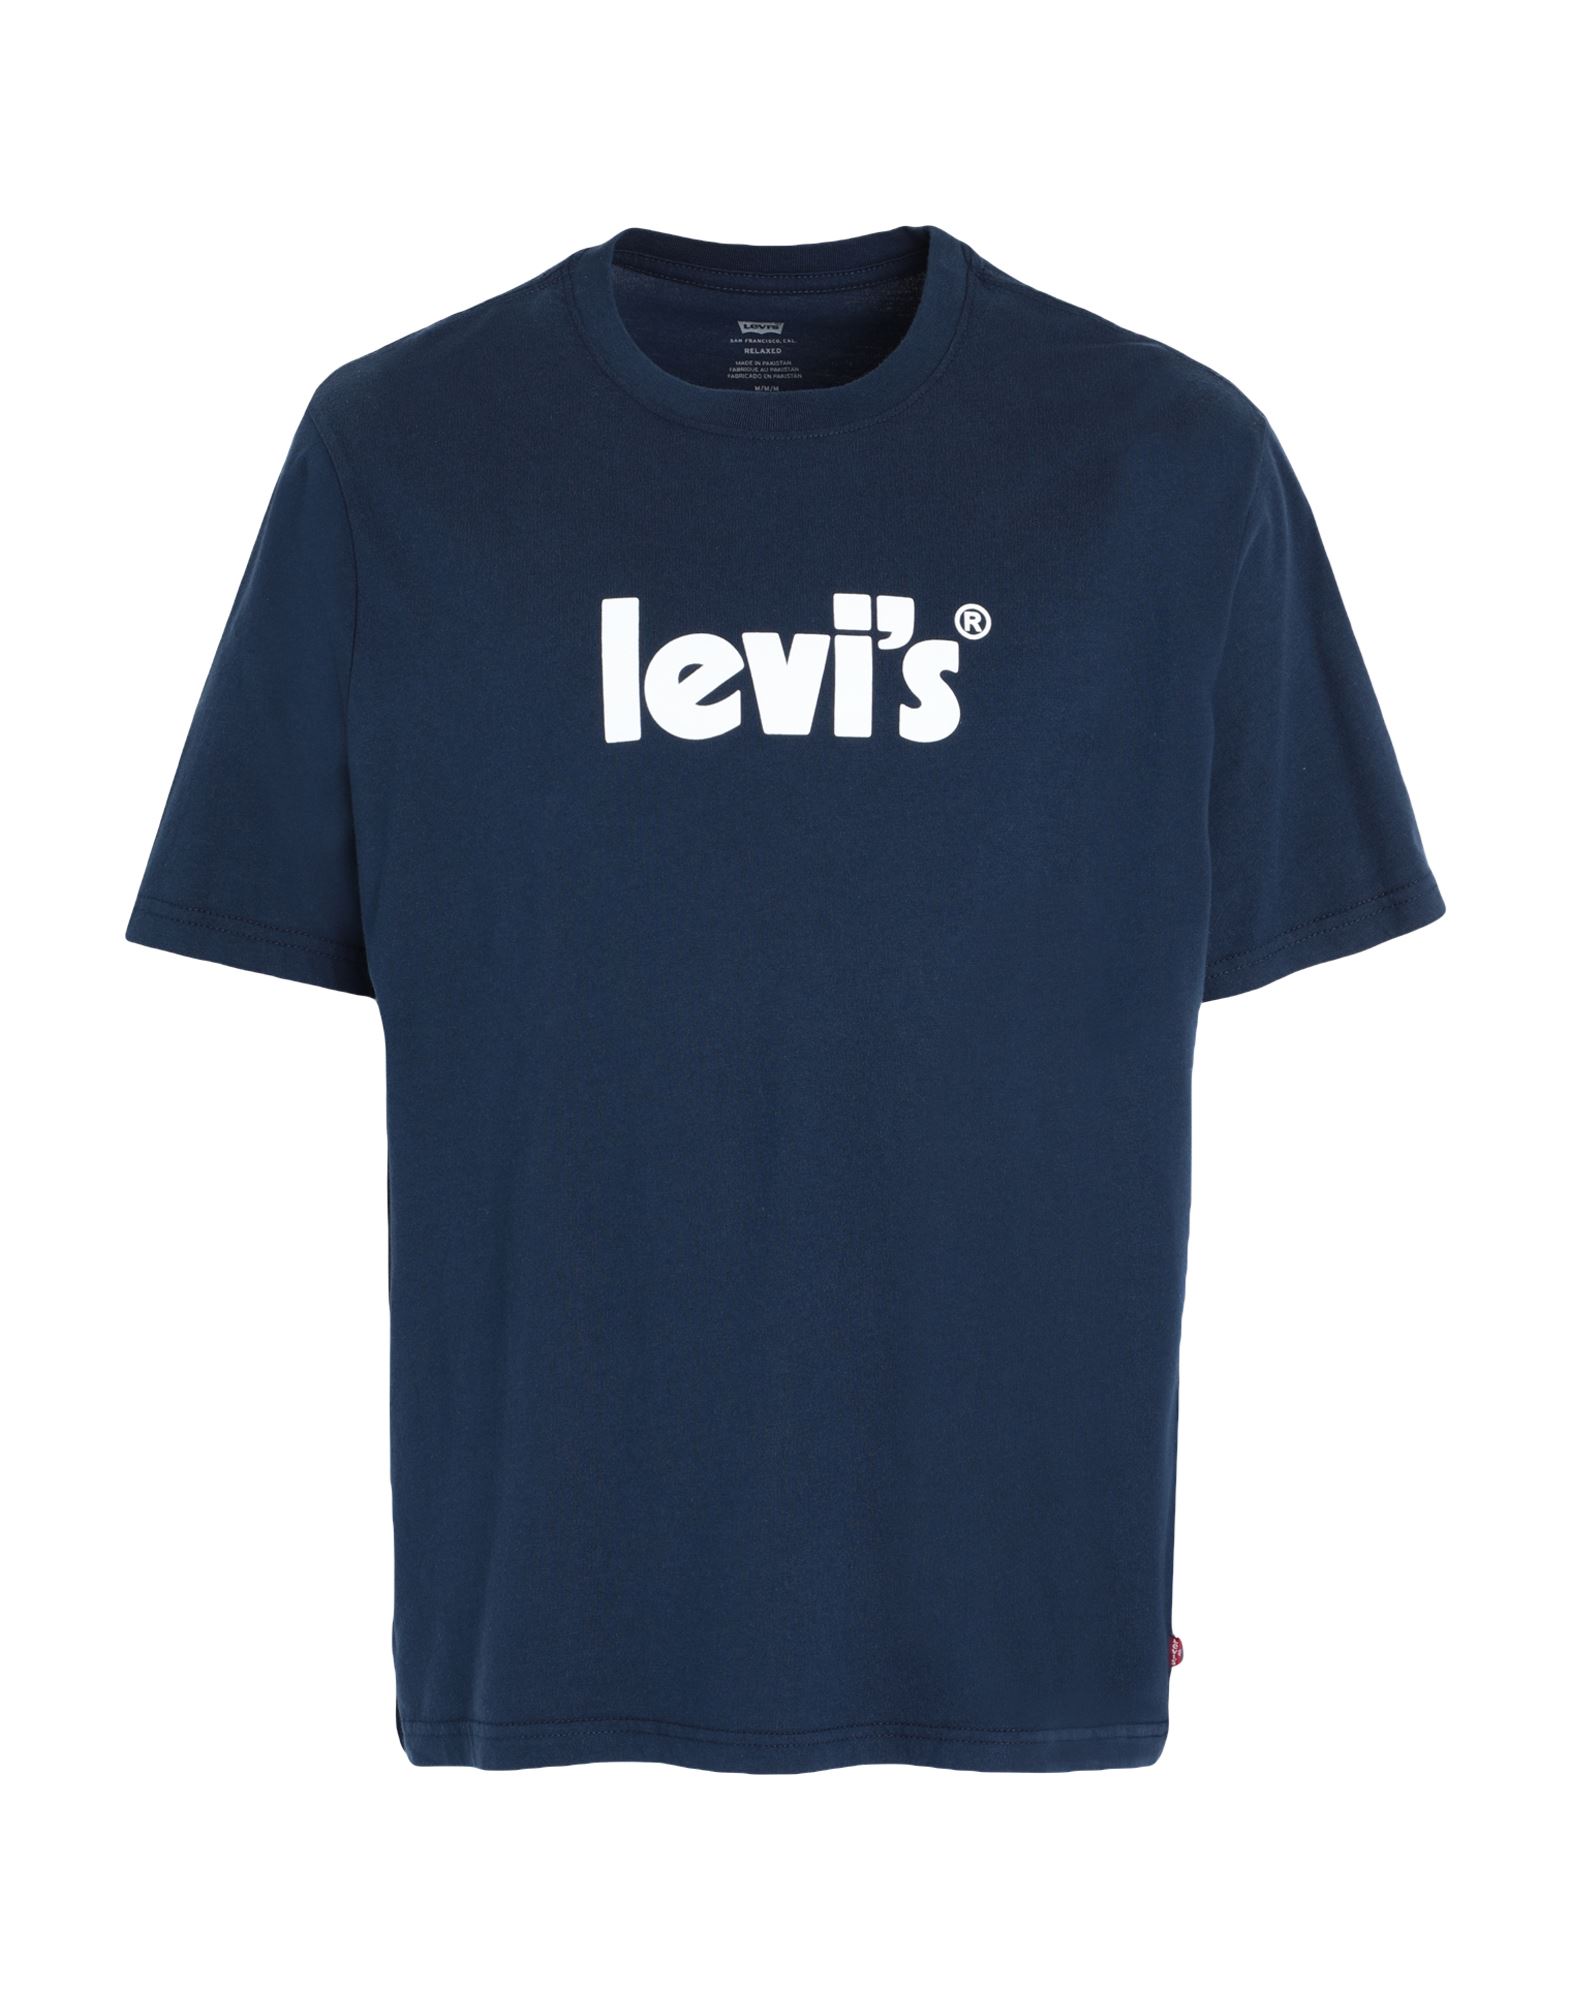 LEVI'S T-shirts Herren Nachtblau von LEVI'S